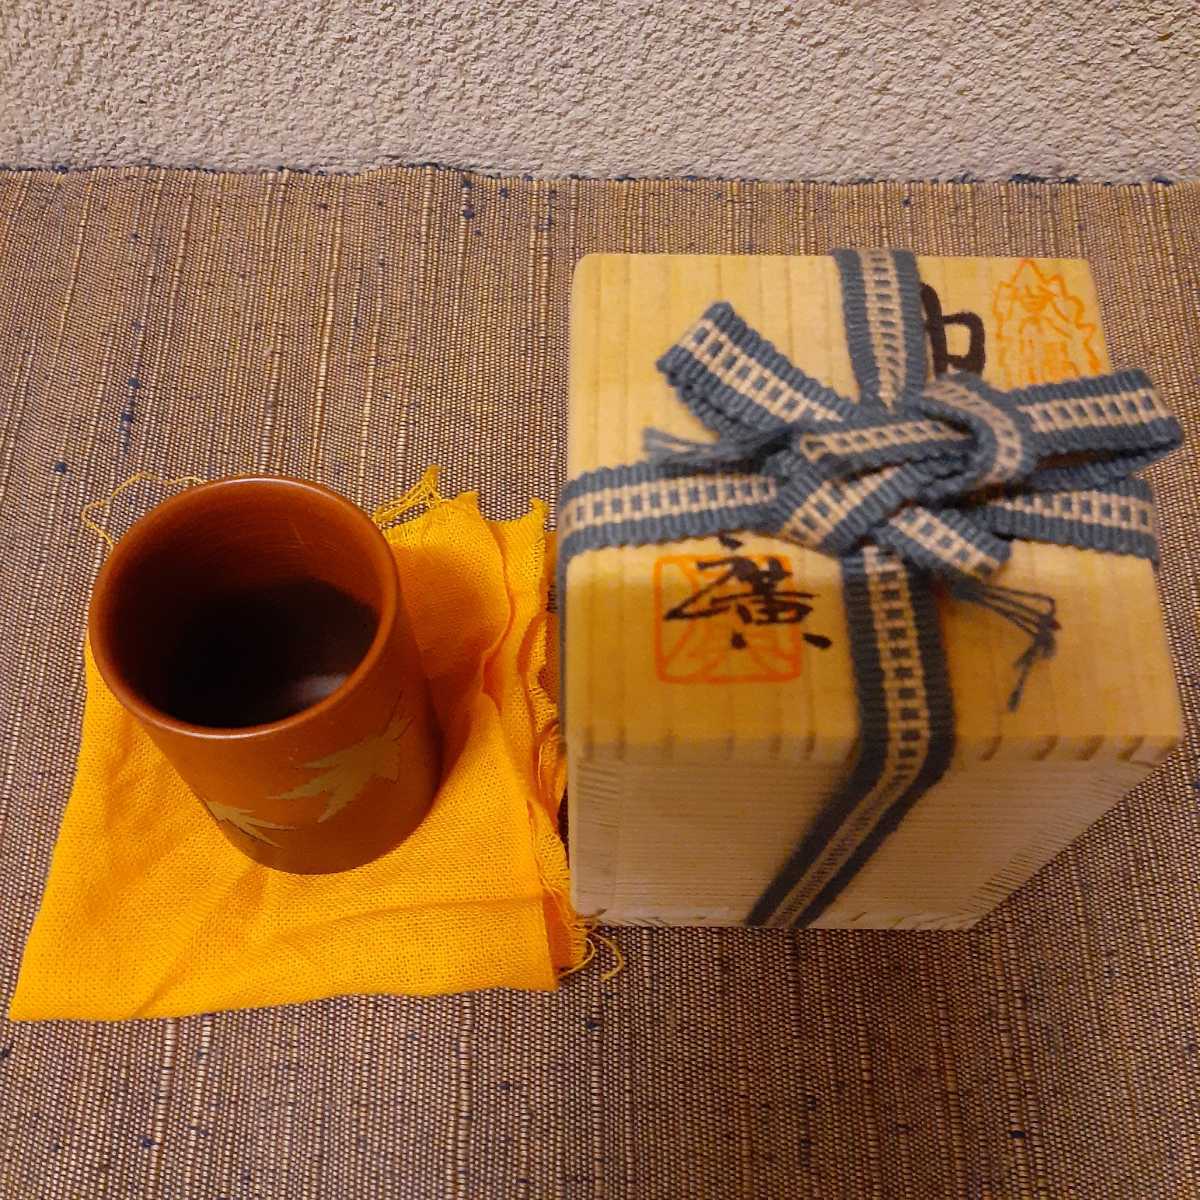  чай ширина тубус ширина тубус чай коробка для вместе коробка примерно 5.9cm×3.8cm